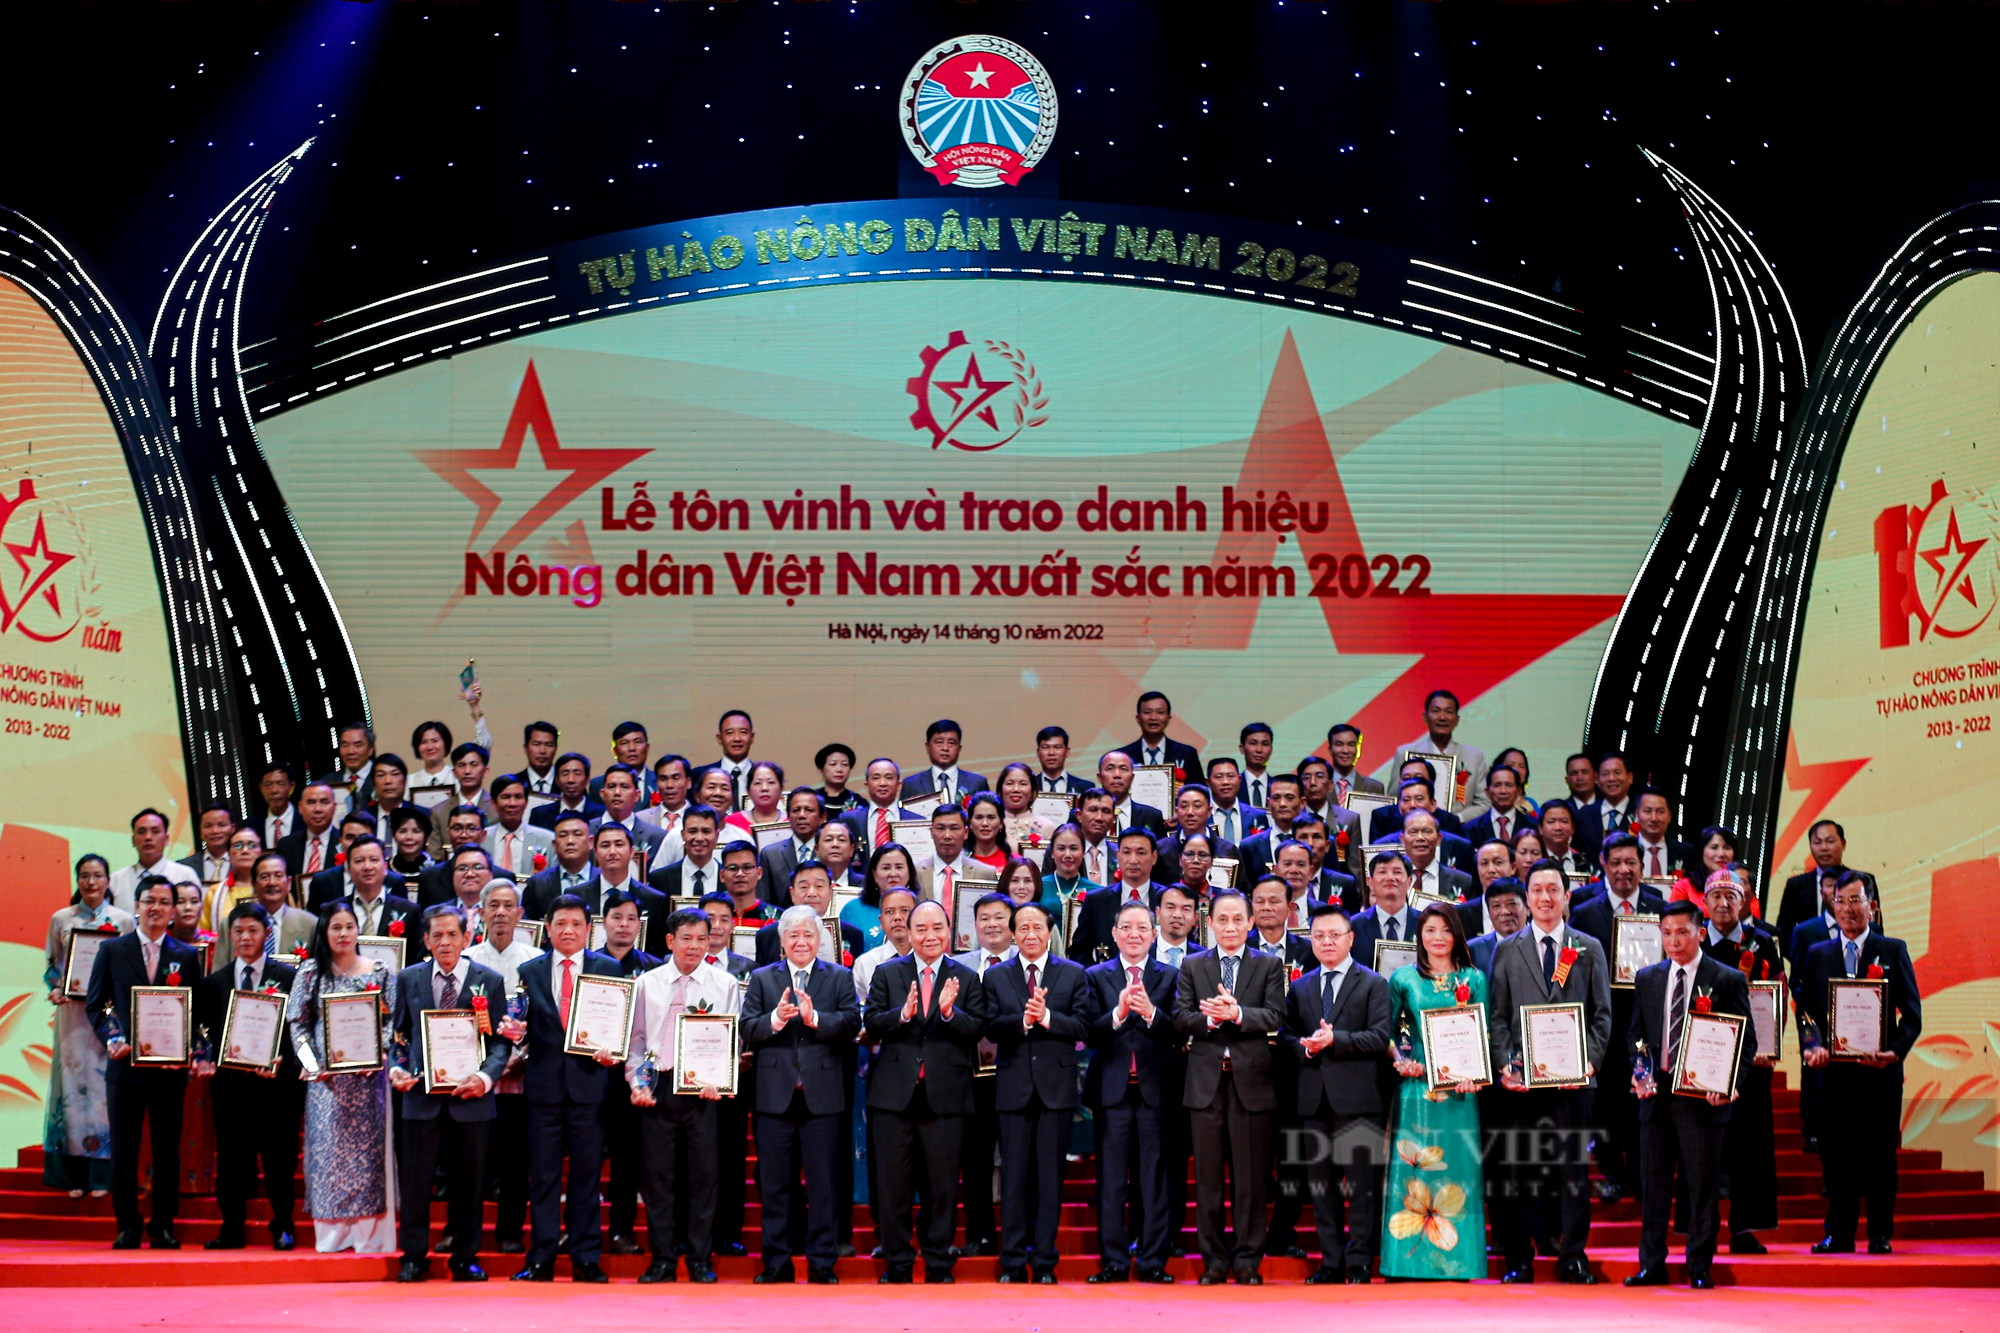 Ảnh toàn cảnh Lễ tôn vinh và trao danh hiệu cho 100 Nông dân Việt Nam xuất sắc 2022 - Ảnh 11.